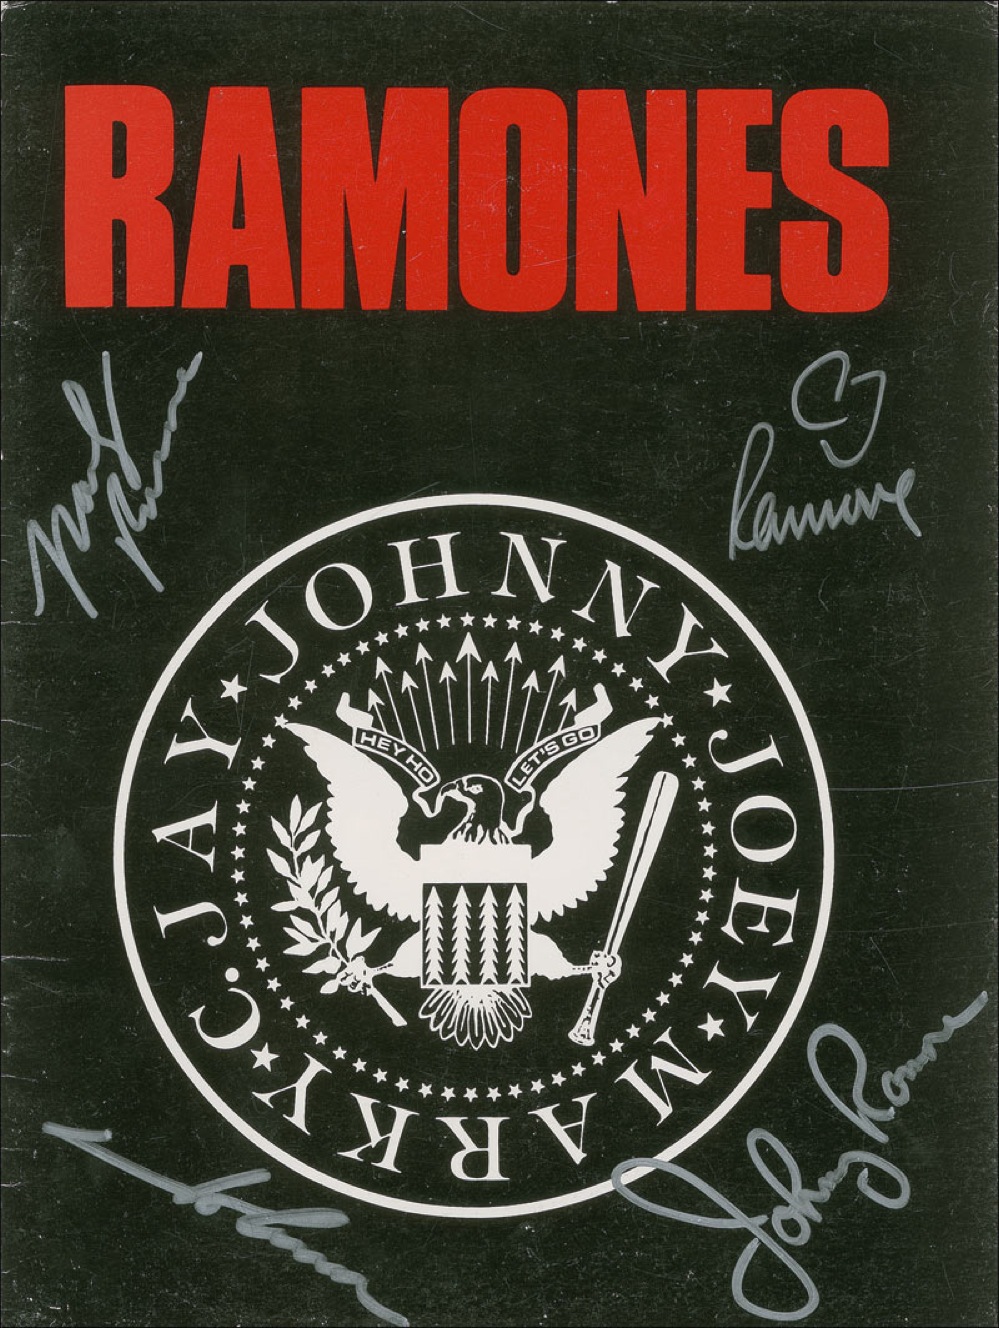 Lot #949 The Ramones